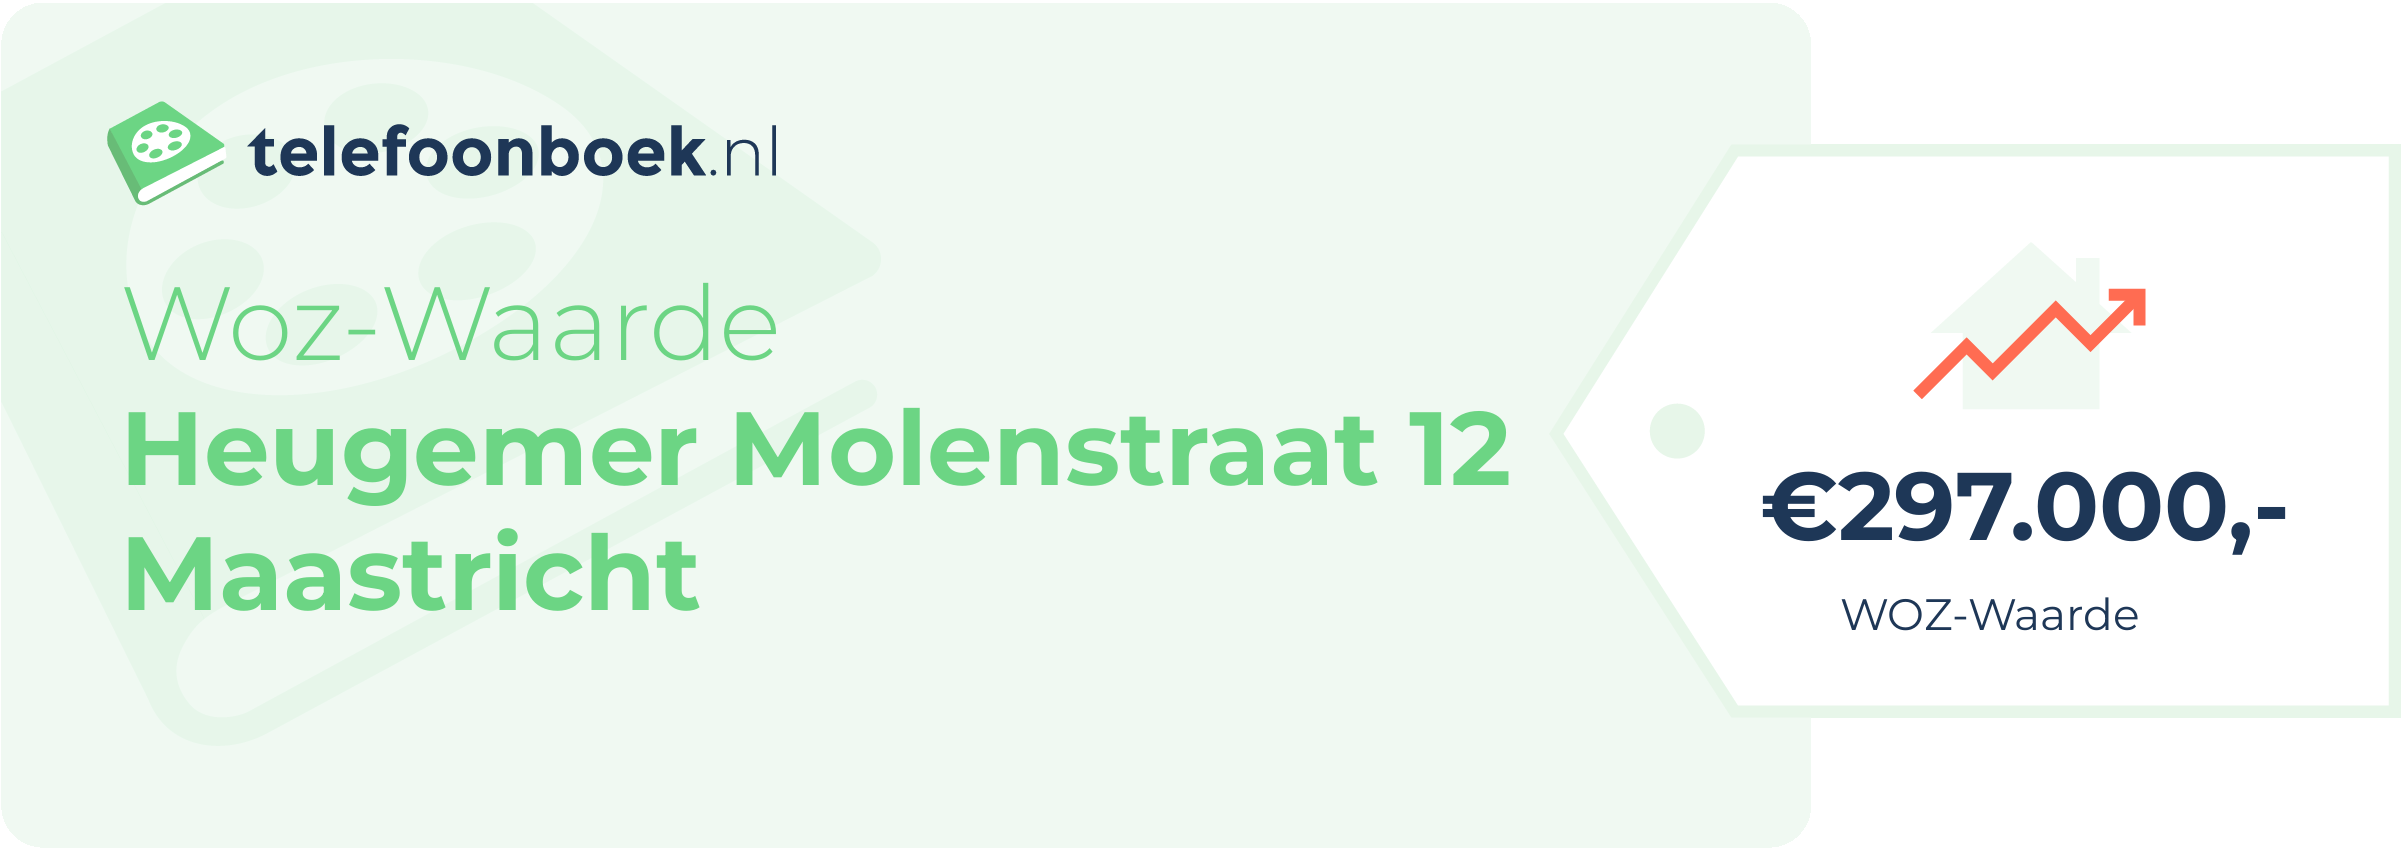 WOZ-waarde Heugemer Molenstraat 12 Maastricht